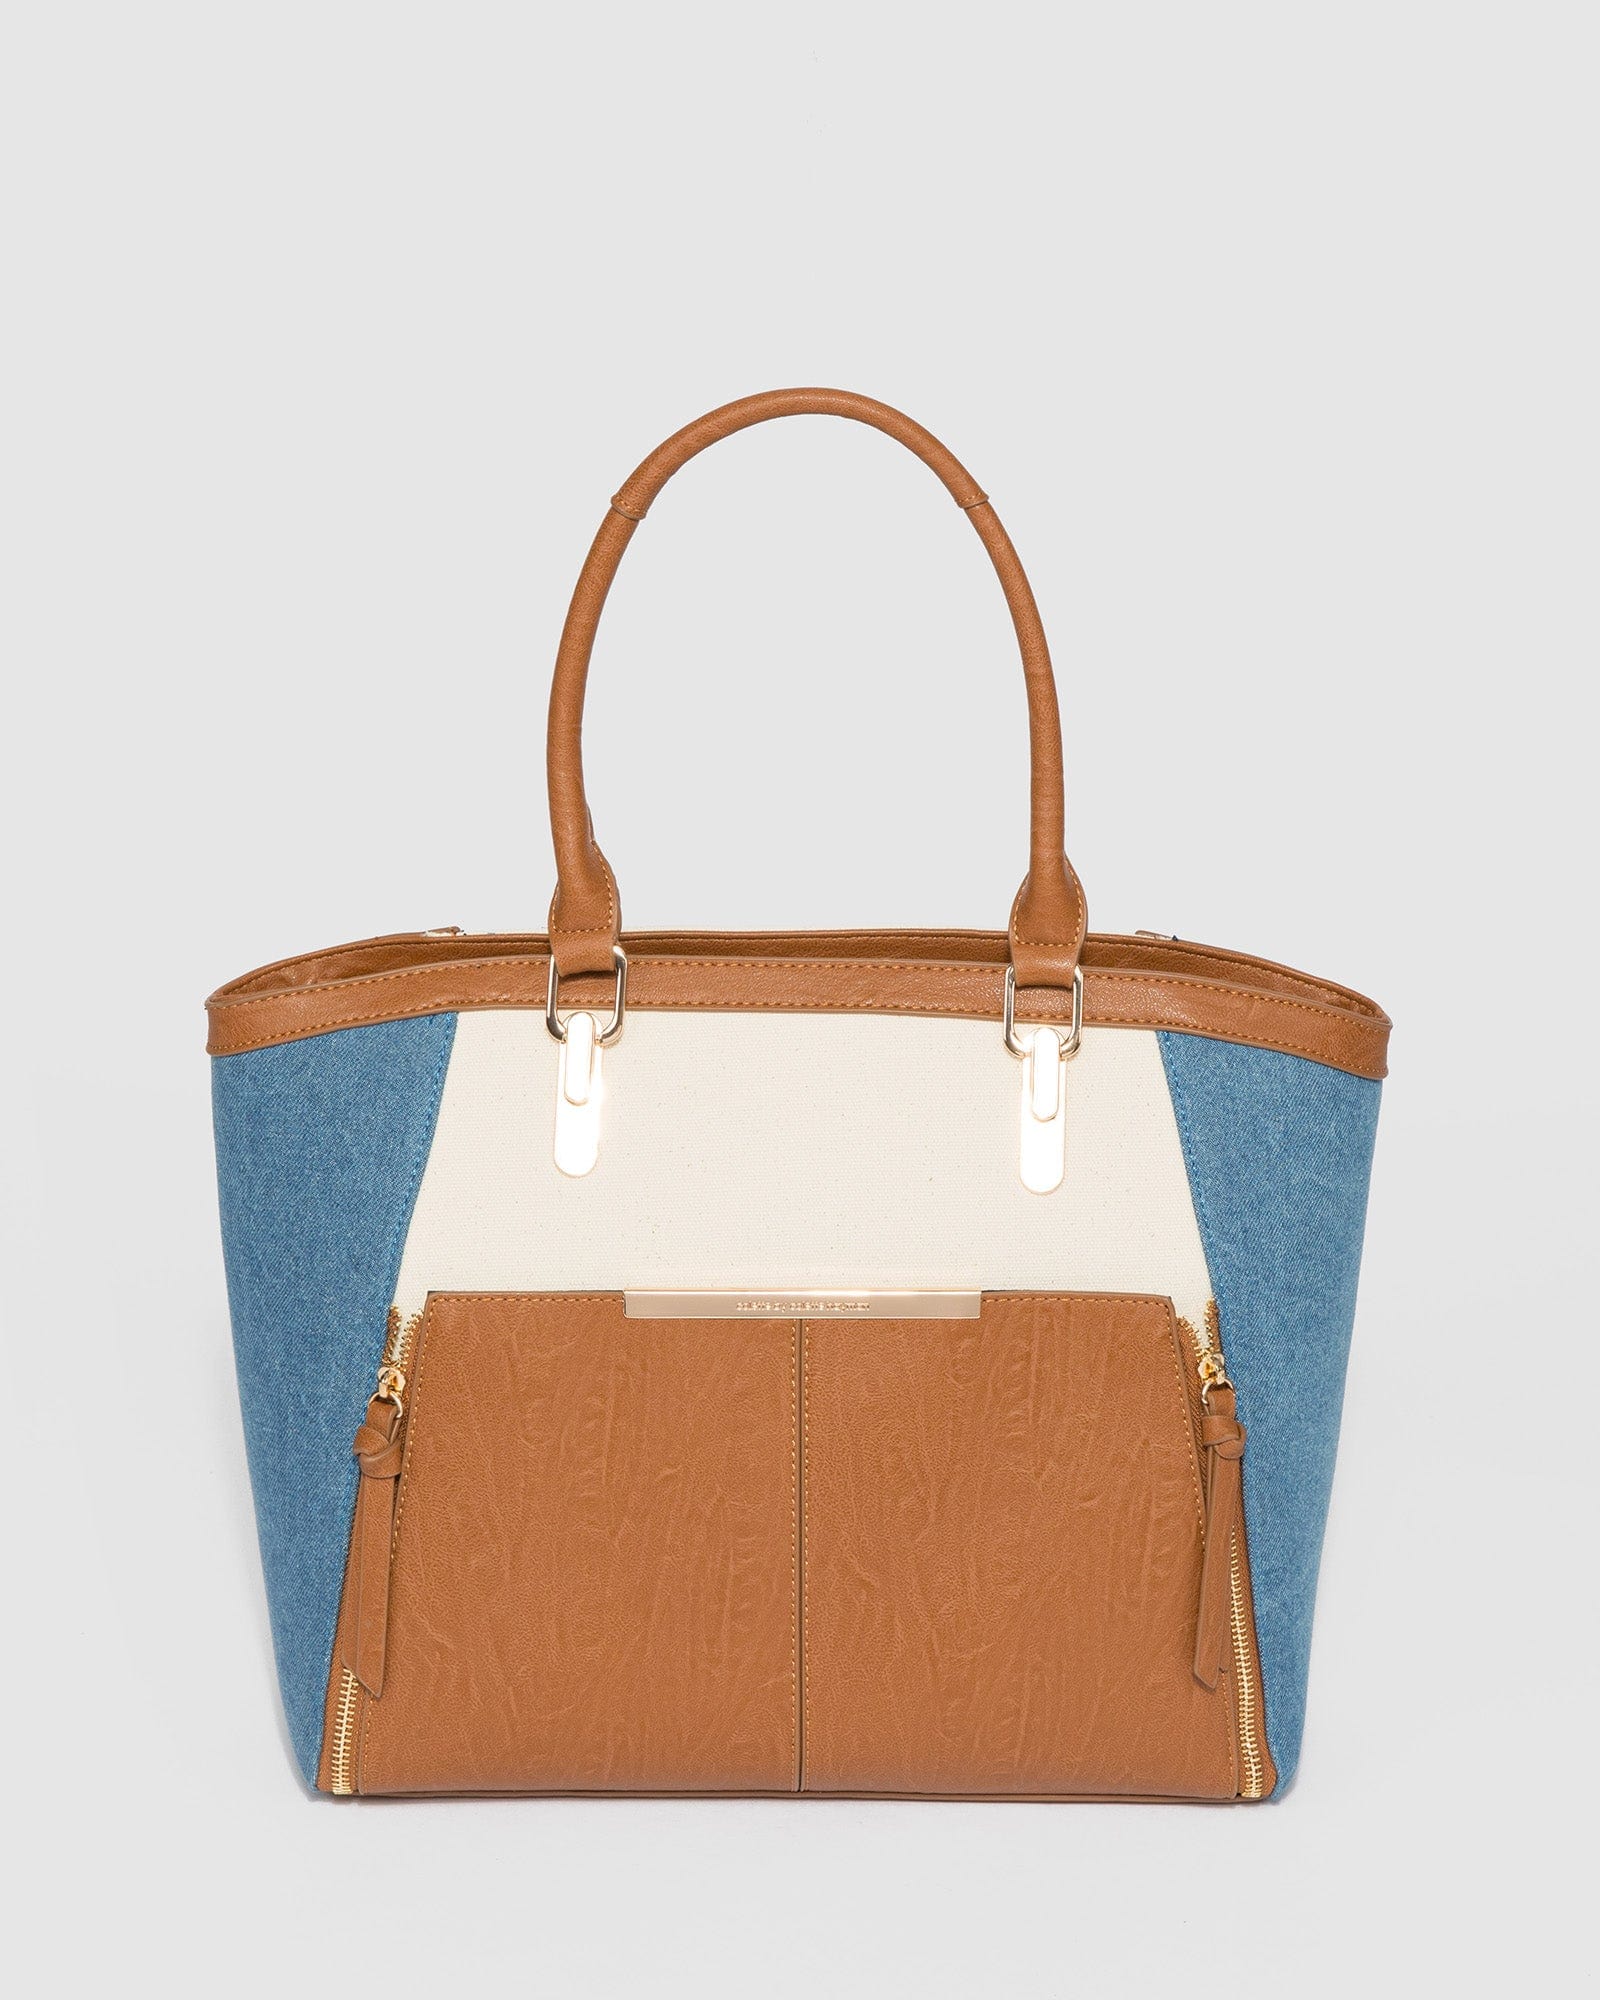 Colette hayman hand bag | Bags logo, Colette, Bags